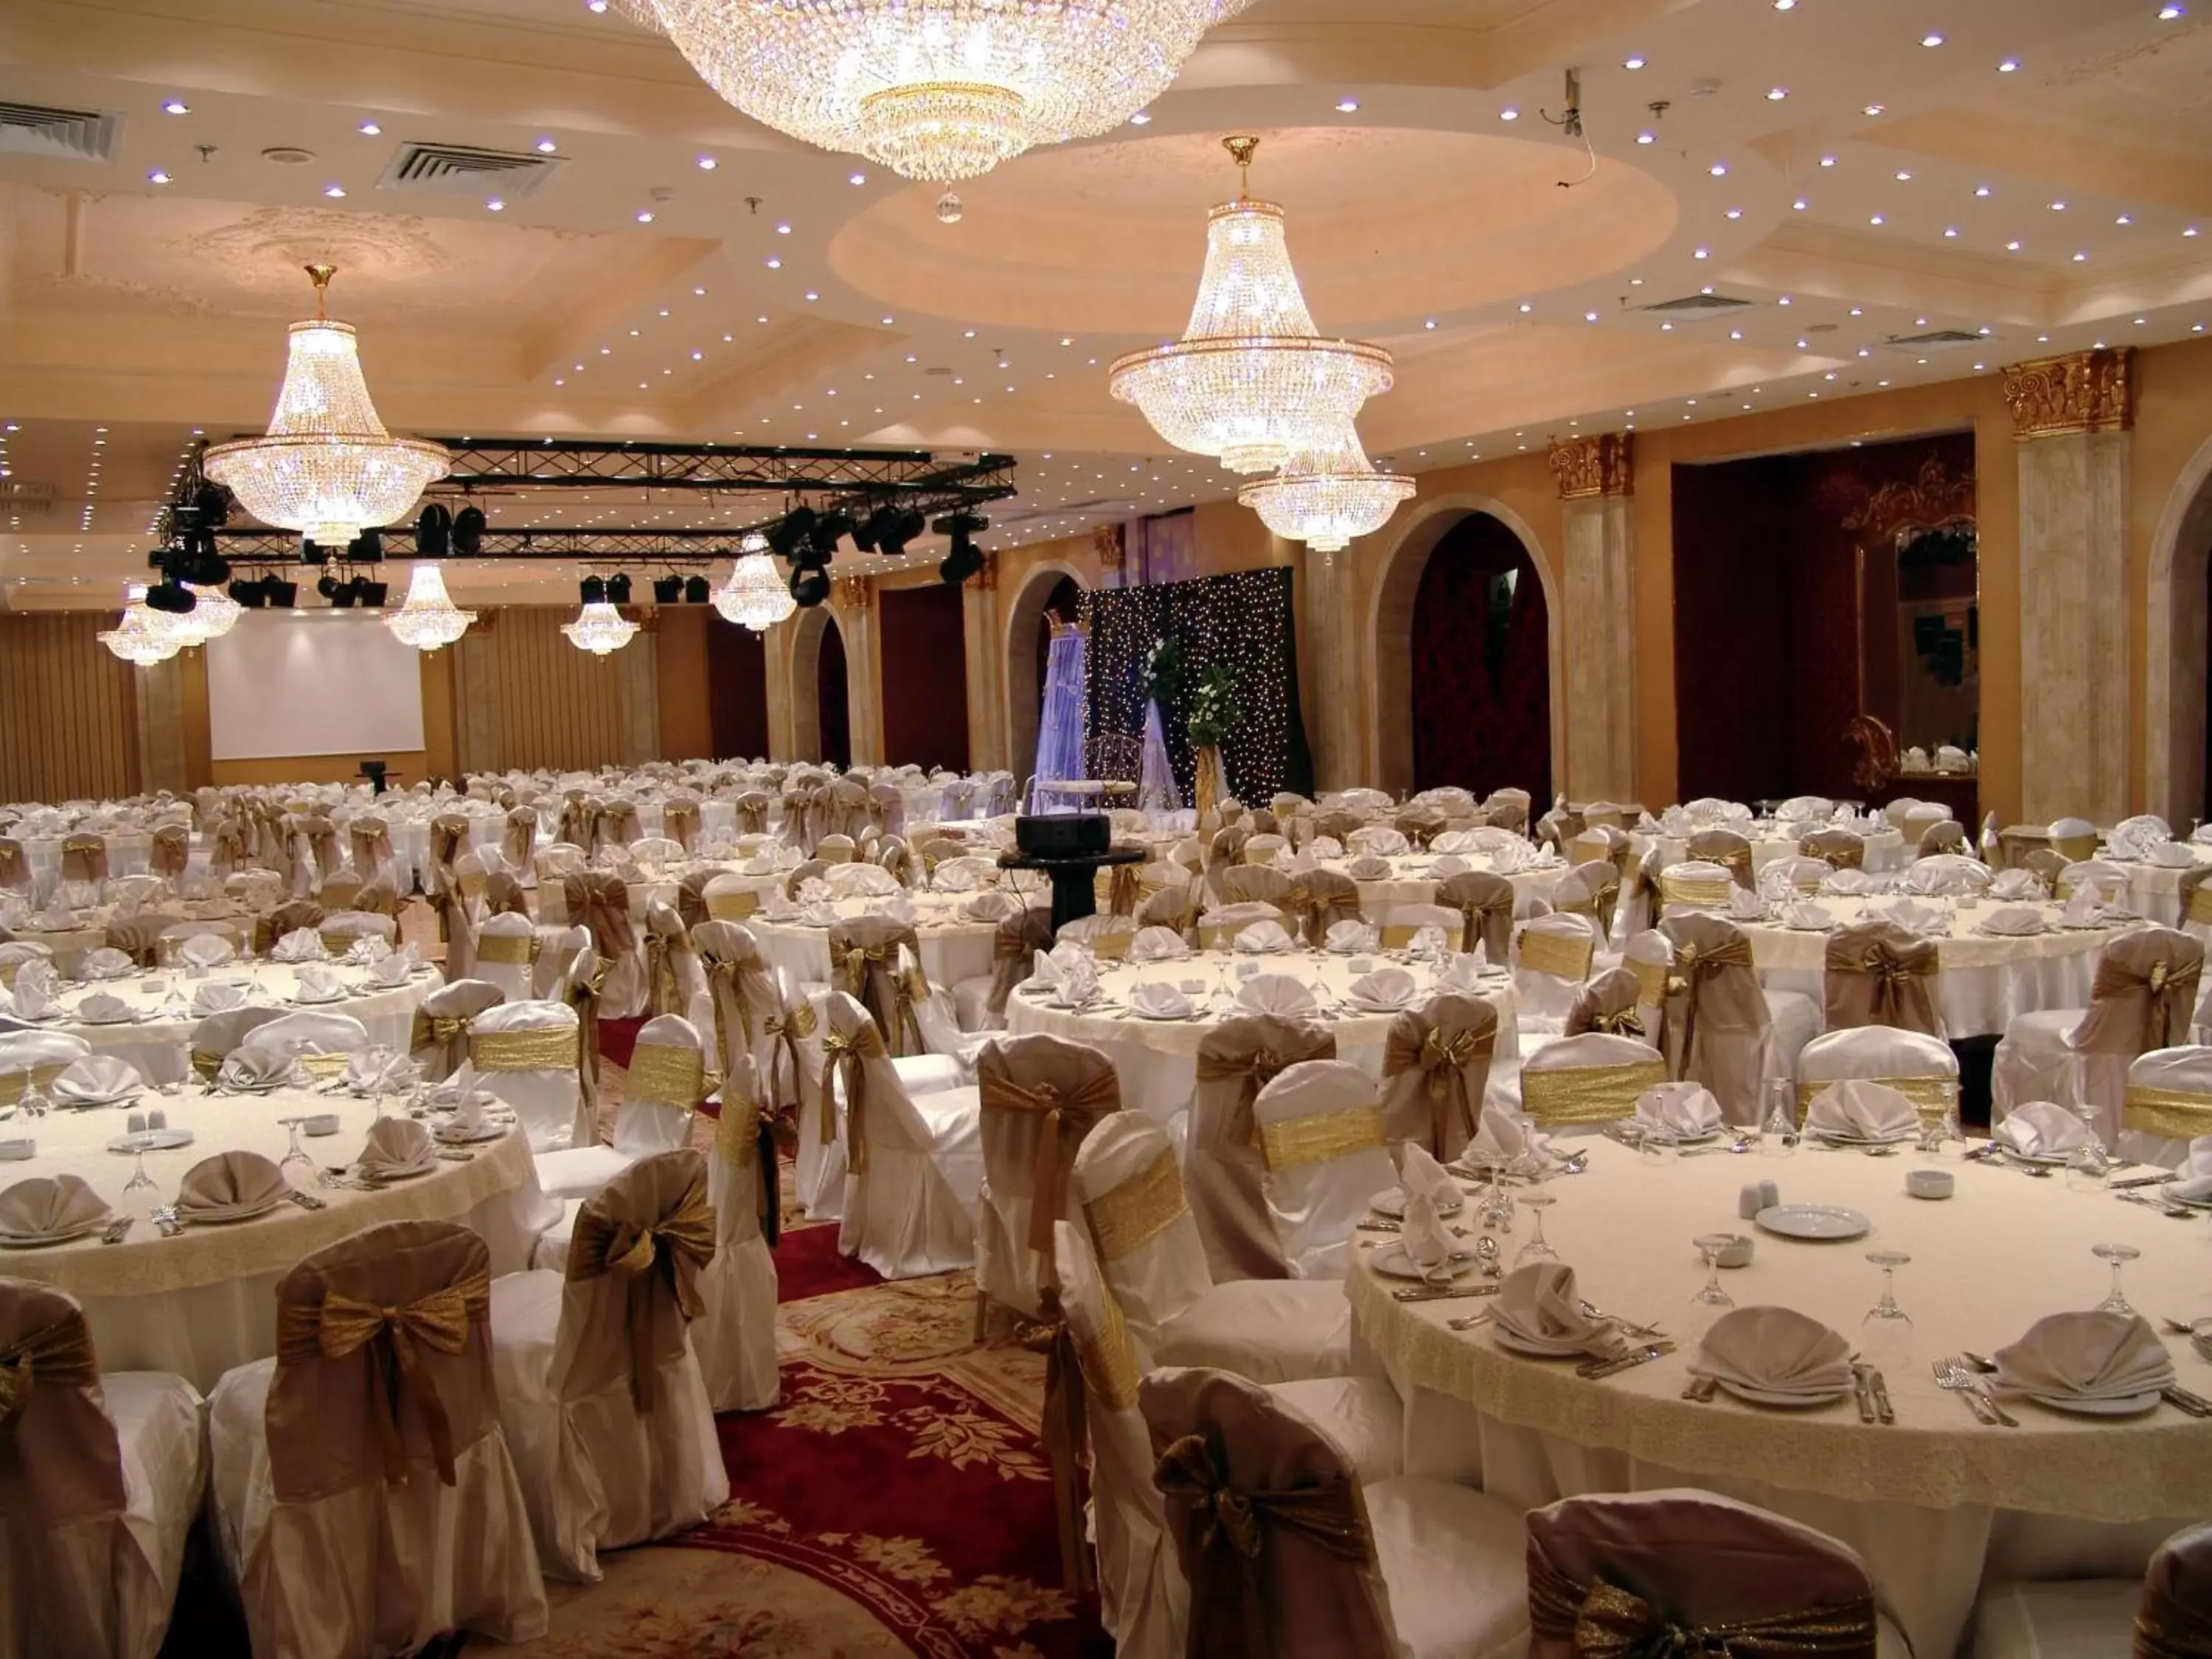 Banquet/Function facilities, Banquet Facilities in Pyramisa Suites Hotel Cairo